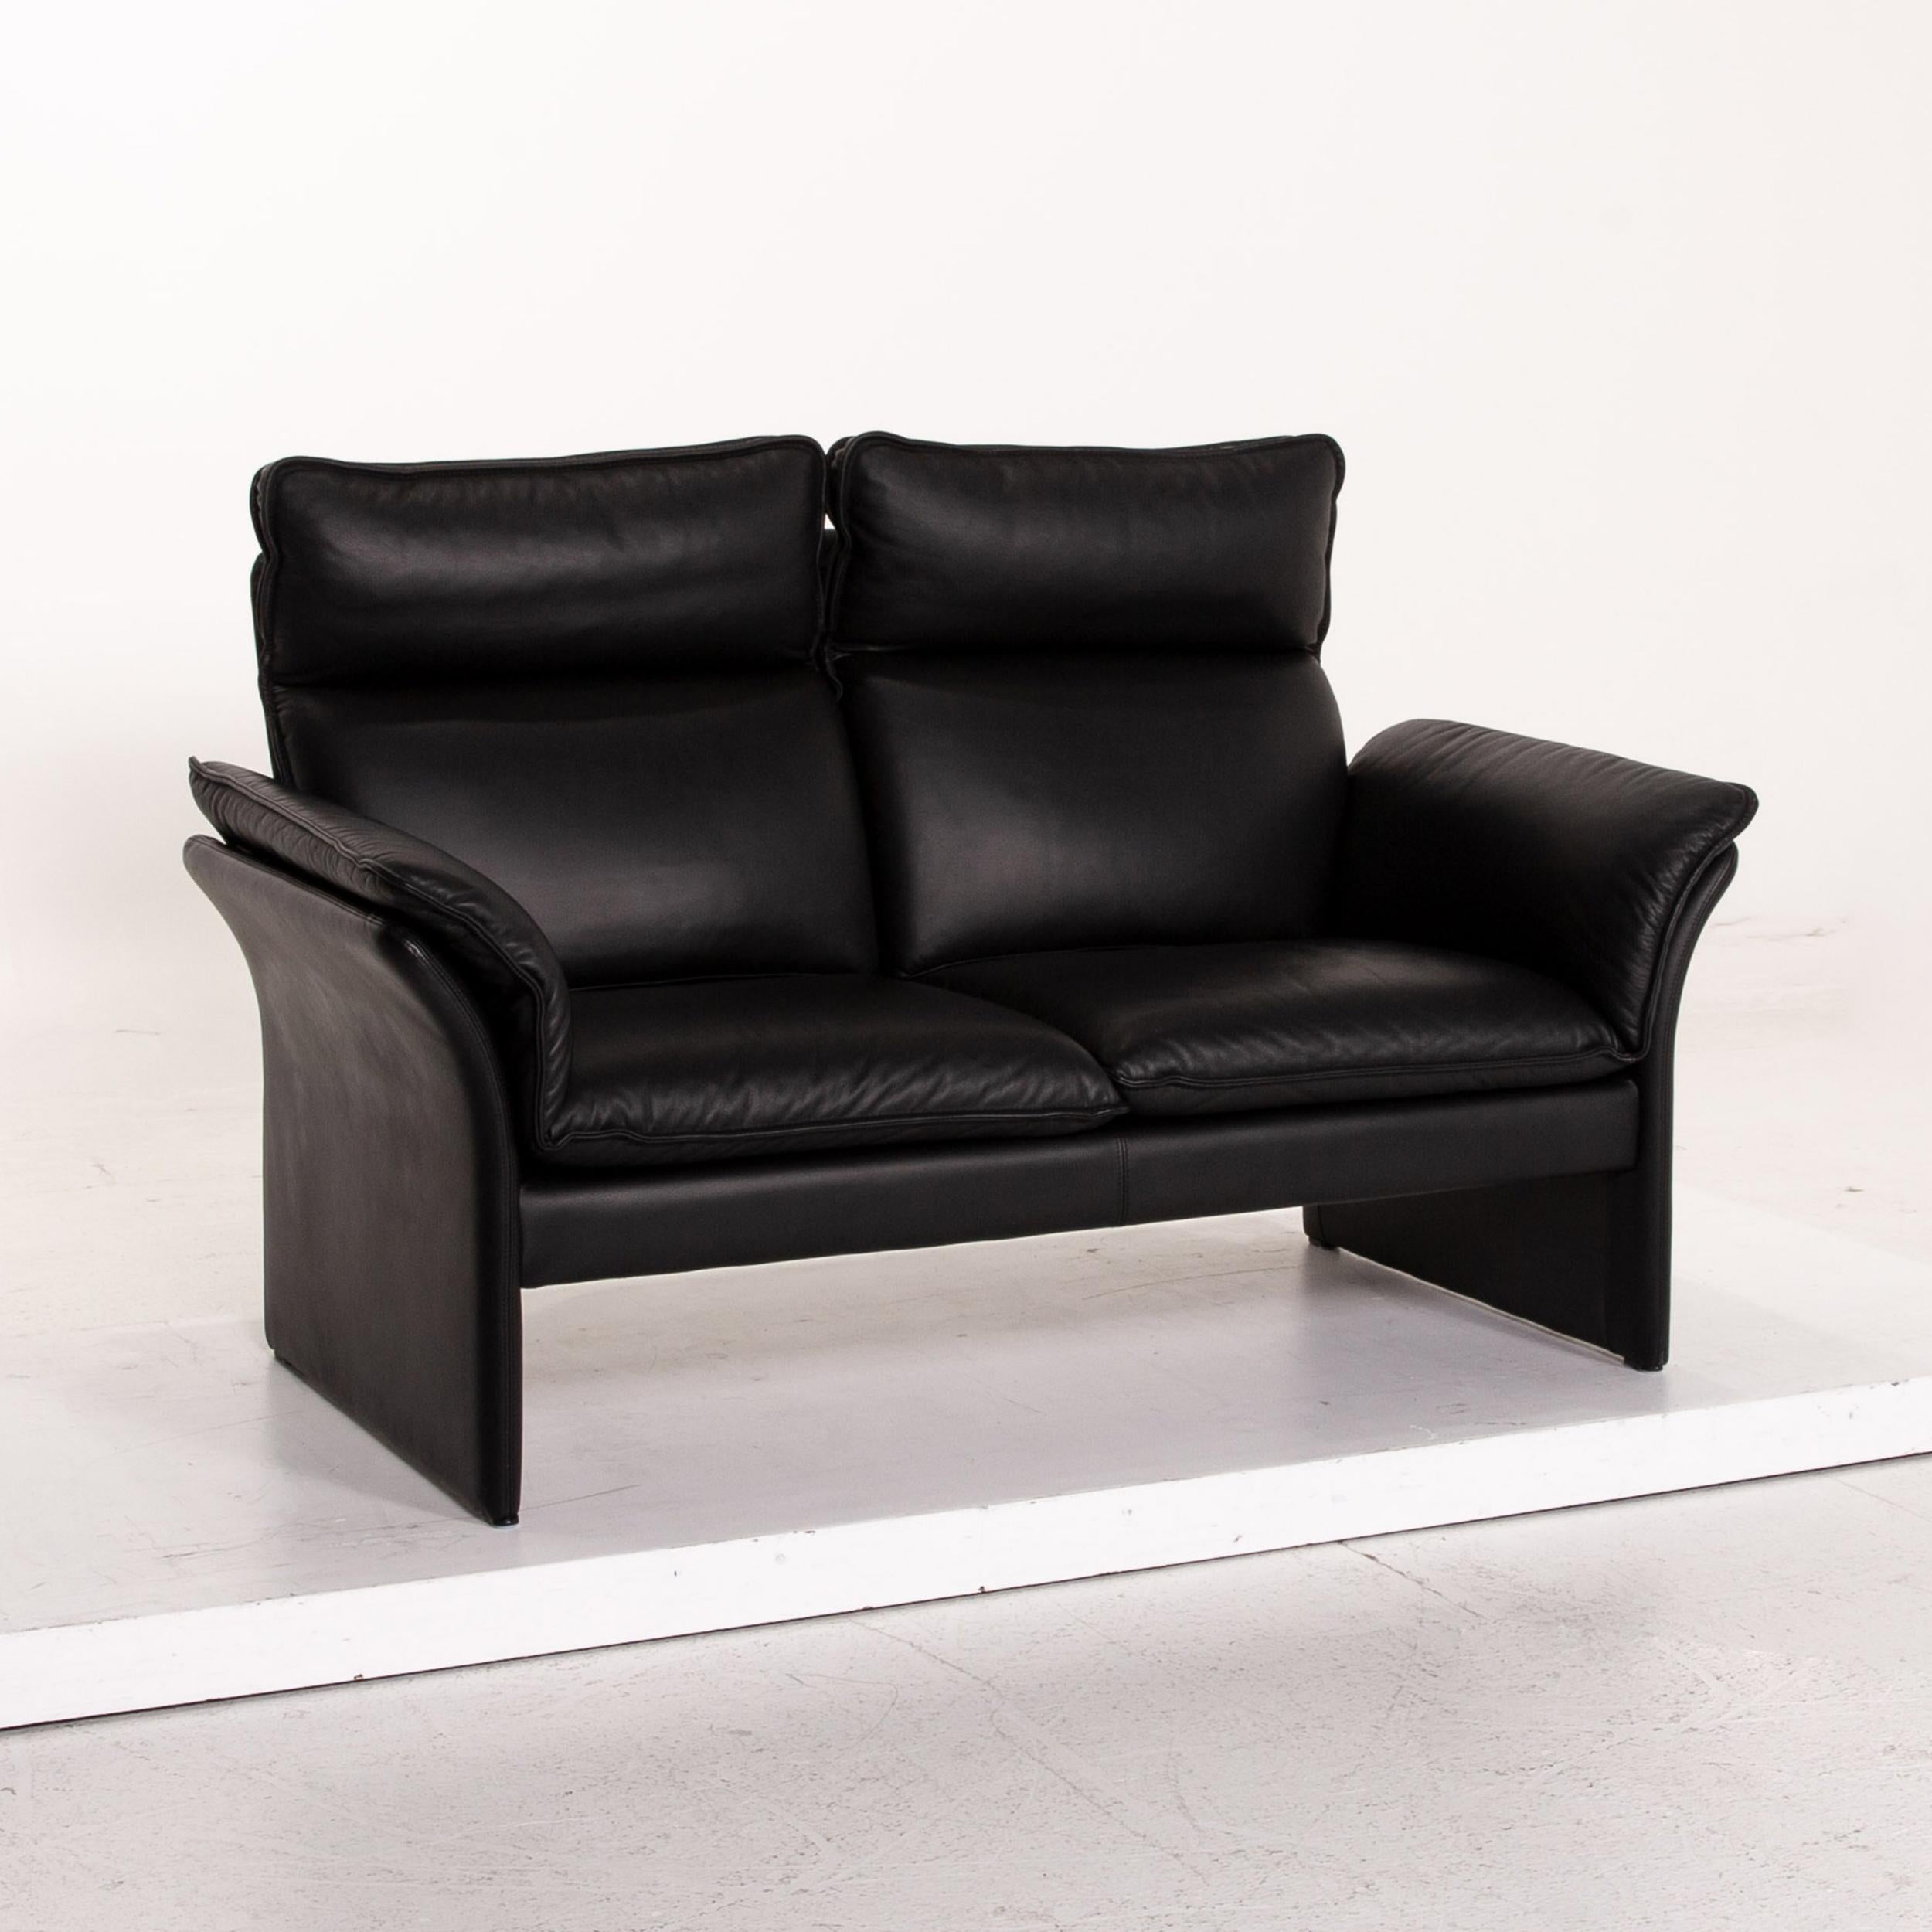 Three-Point Scala Leather Sofa Set Black 1 Three-Seat 1 Two-Seat 5